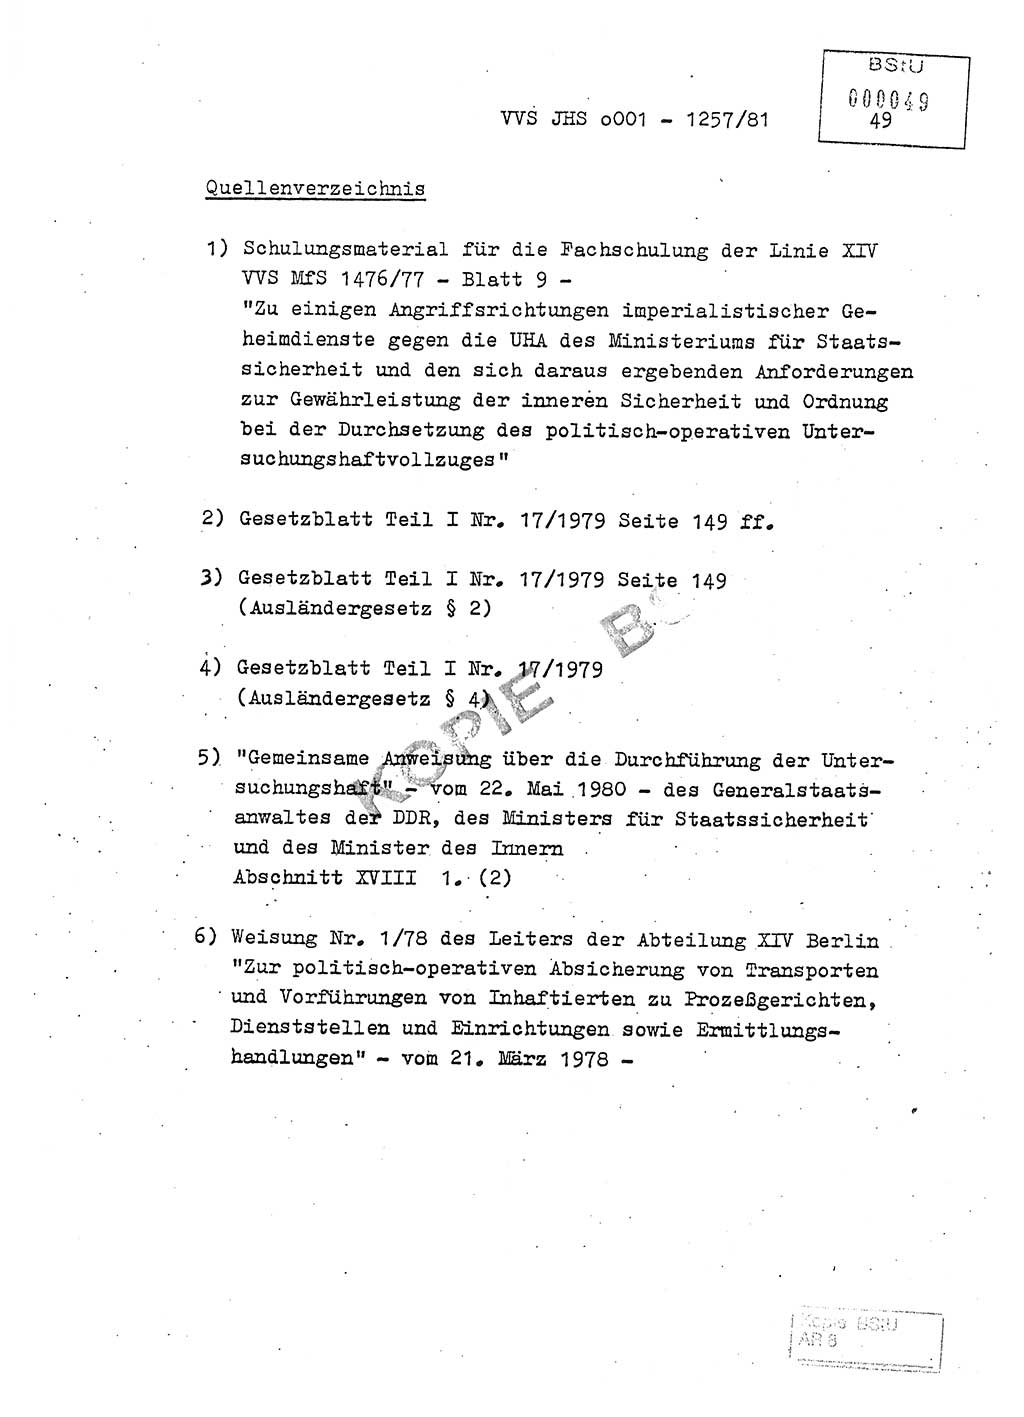 Fachschulabschlußarbeit Unterleutnant Dieter Möller (BV Rst. Abt. ⅩⅣ), Ministerium für Staatssicherheit (MfS) [Deutsche Demokratische Republik (DDR)], Juristische Hochschule (JHS), Vertrauliche Verschlußsache (VVS) o001-1257/81, Potsdam 1982, Seite 49 (FS-Abschl.-Arb. MfS DDR JHS VVS o001-1257/81 1982, S. 49)